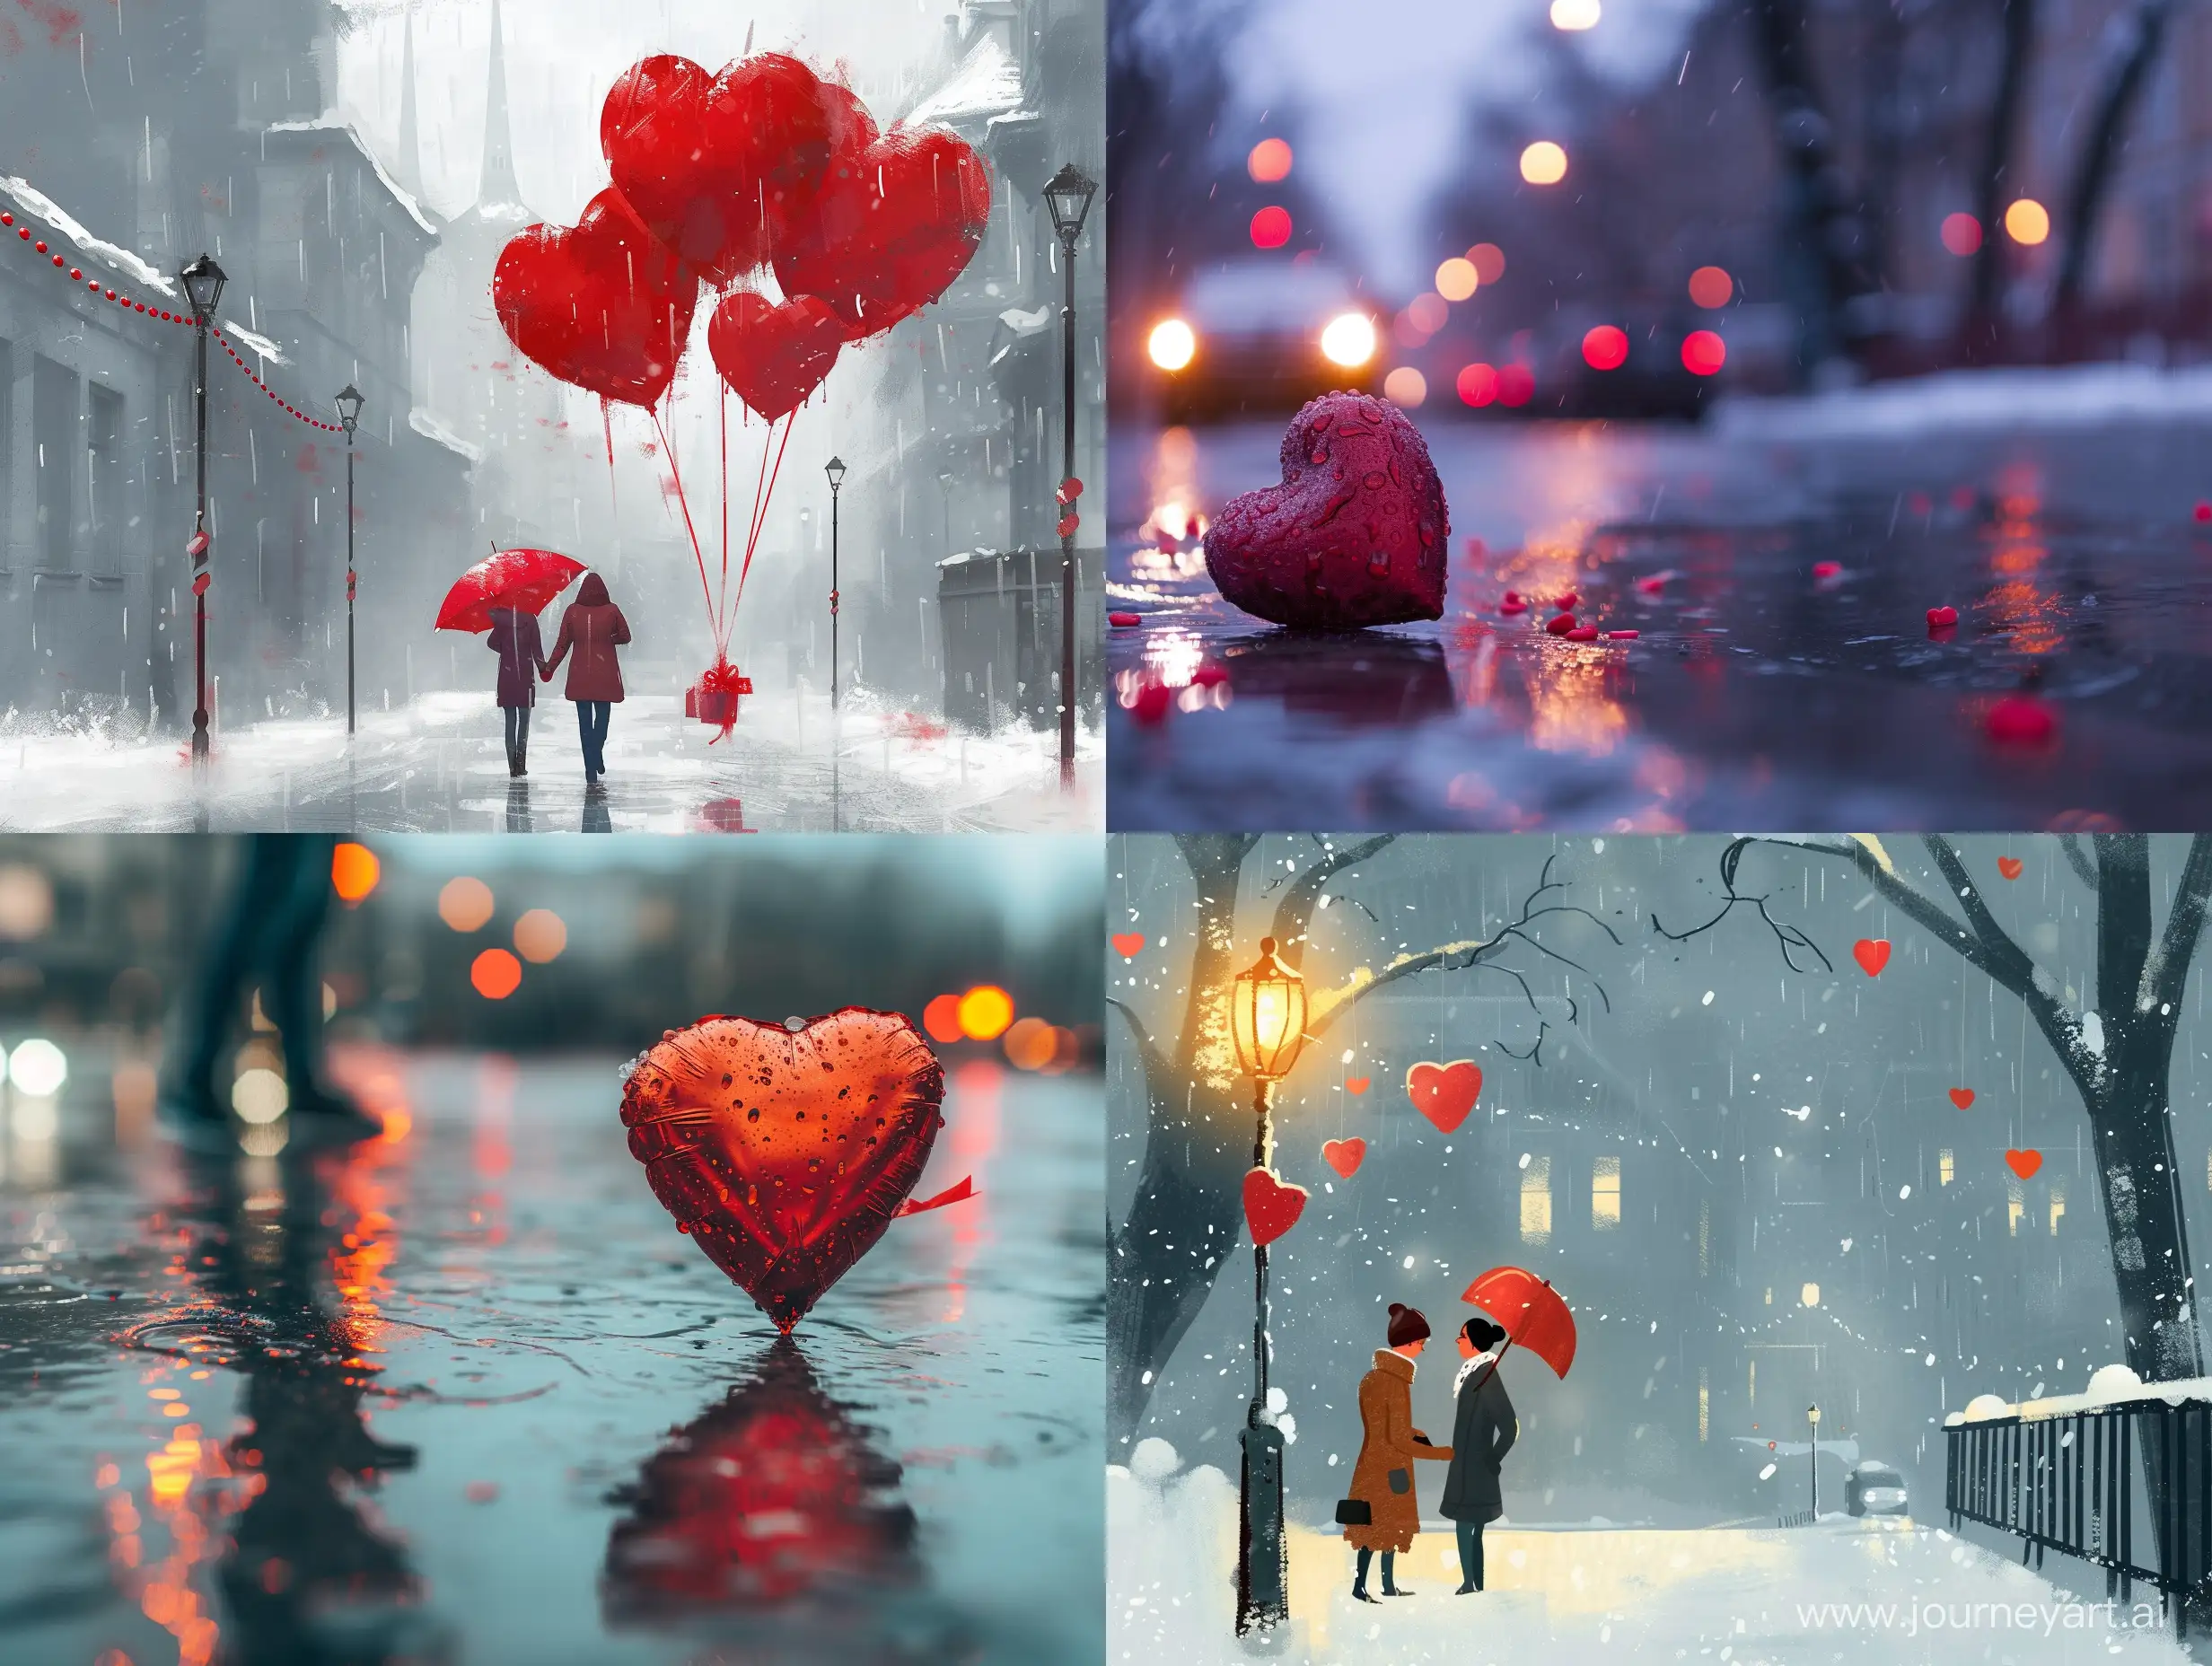 День Святого Валентина в атмосфере серости будней, отсутствия влюбленности и надежд.